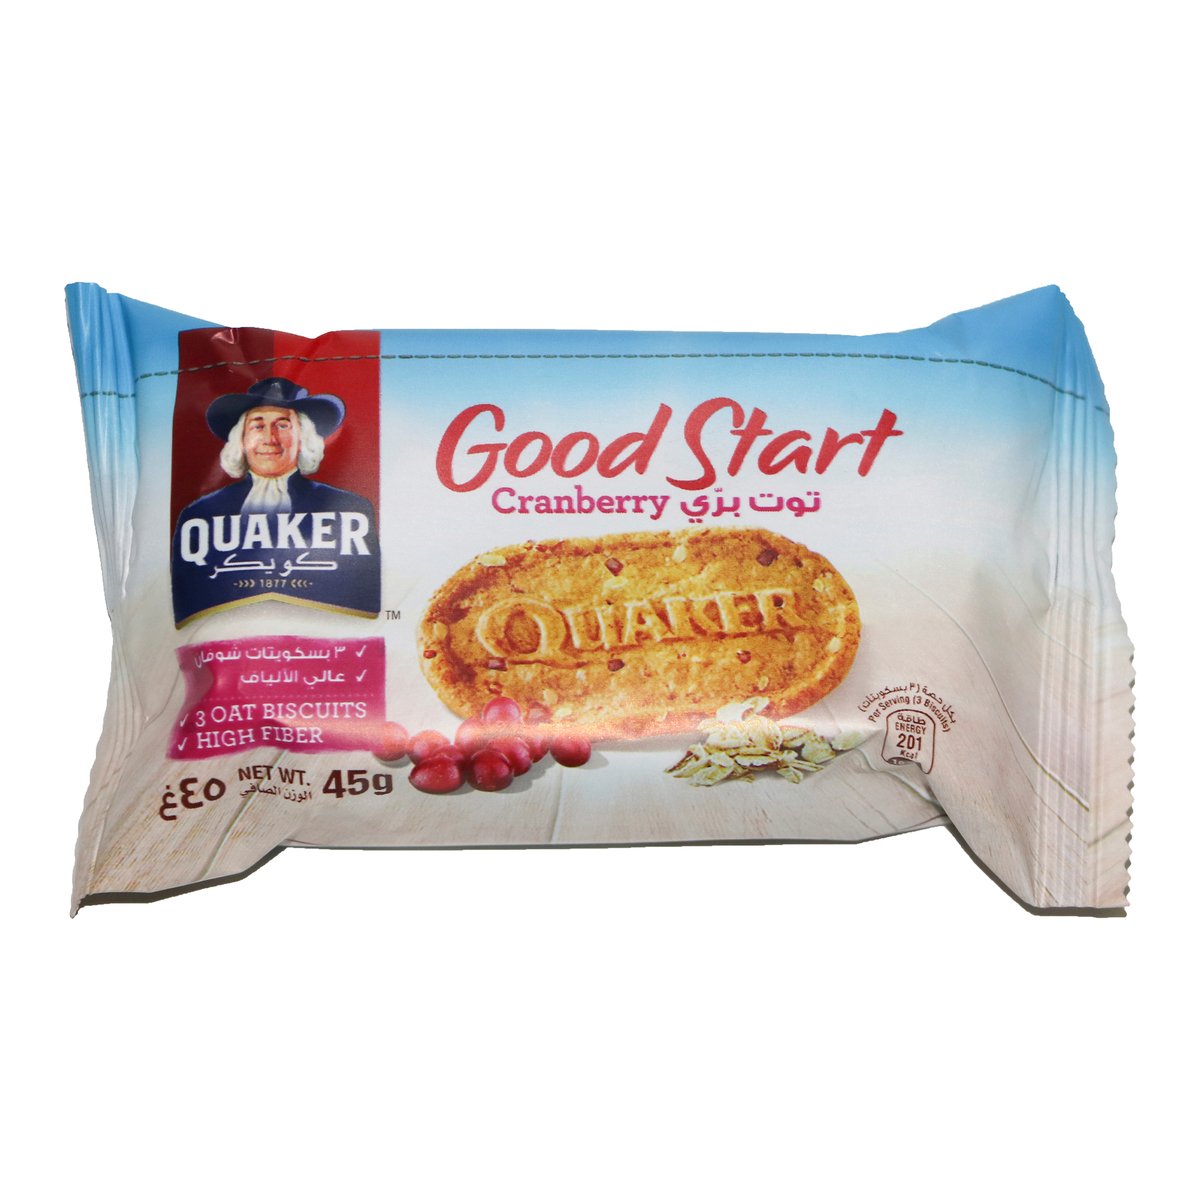 Quaker Good Start Cranberry 6 x 45 g